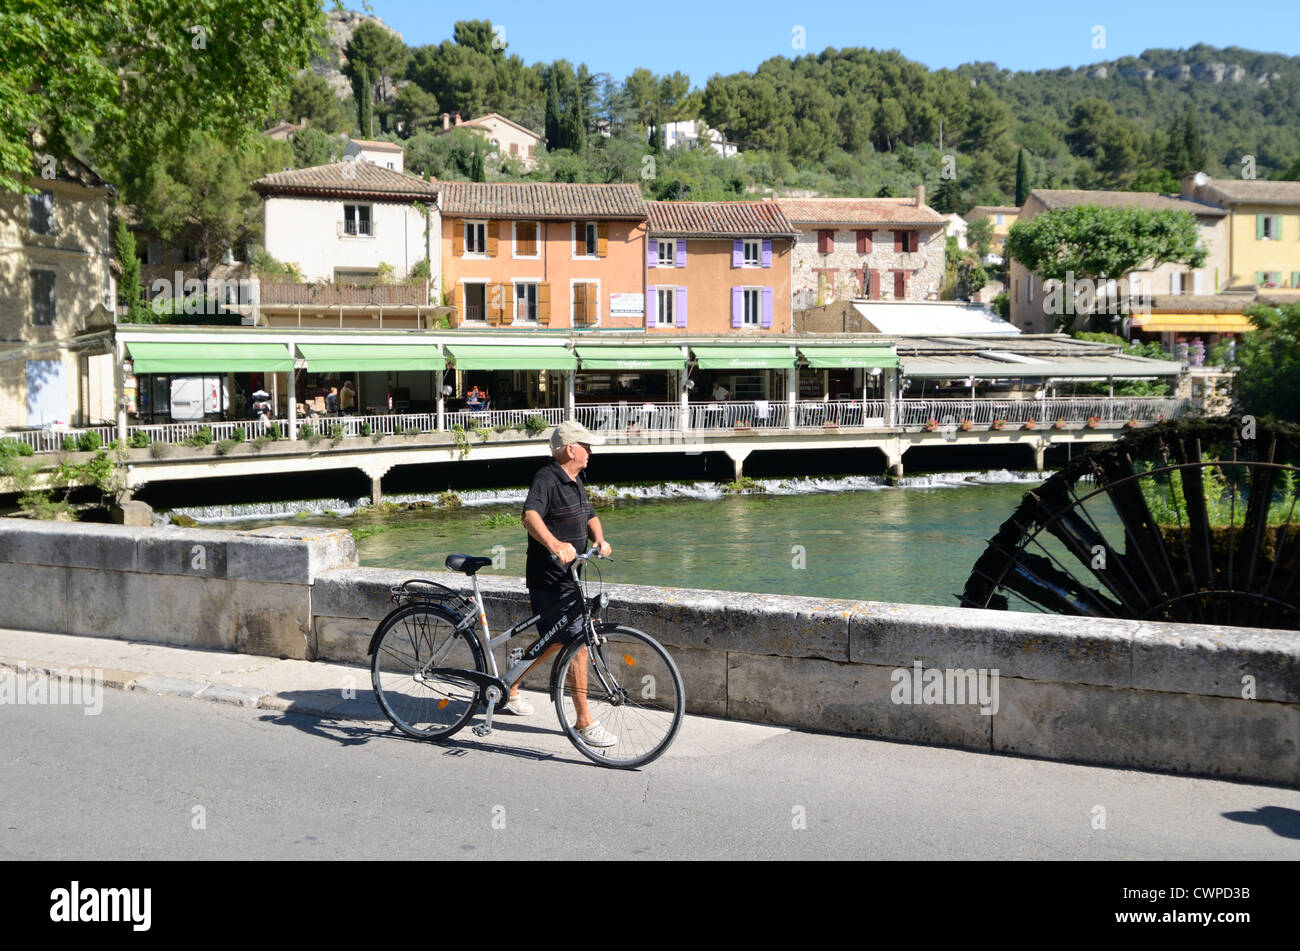 Les cyclistes se promène devant les restaurants du bord de la rivière et surpassant le pont sur la Sorgue à Fontaine-de-Vaucluse Vaucluse Provence France Banque D'Images